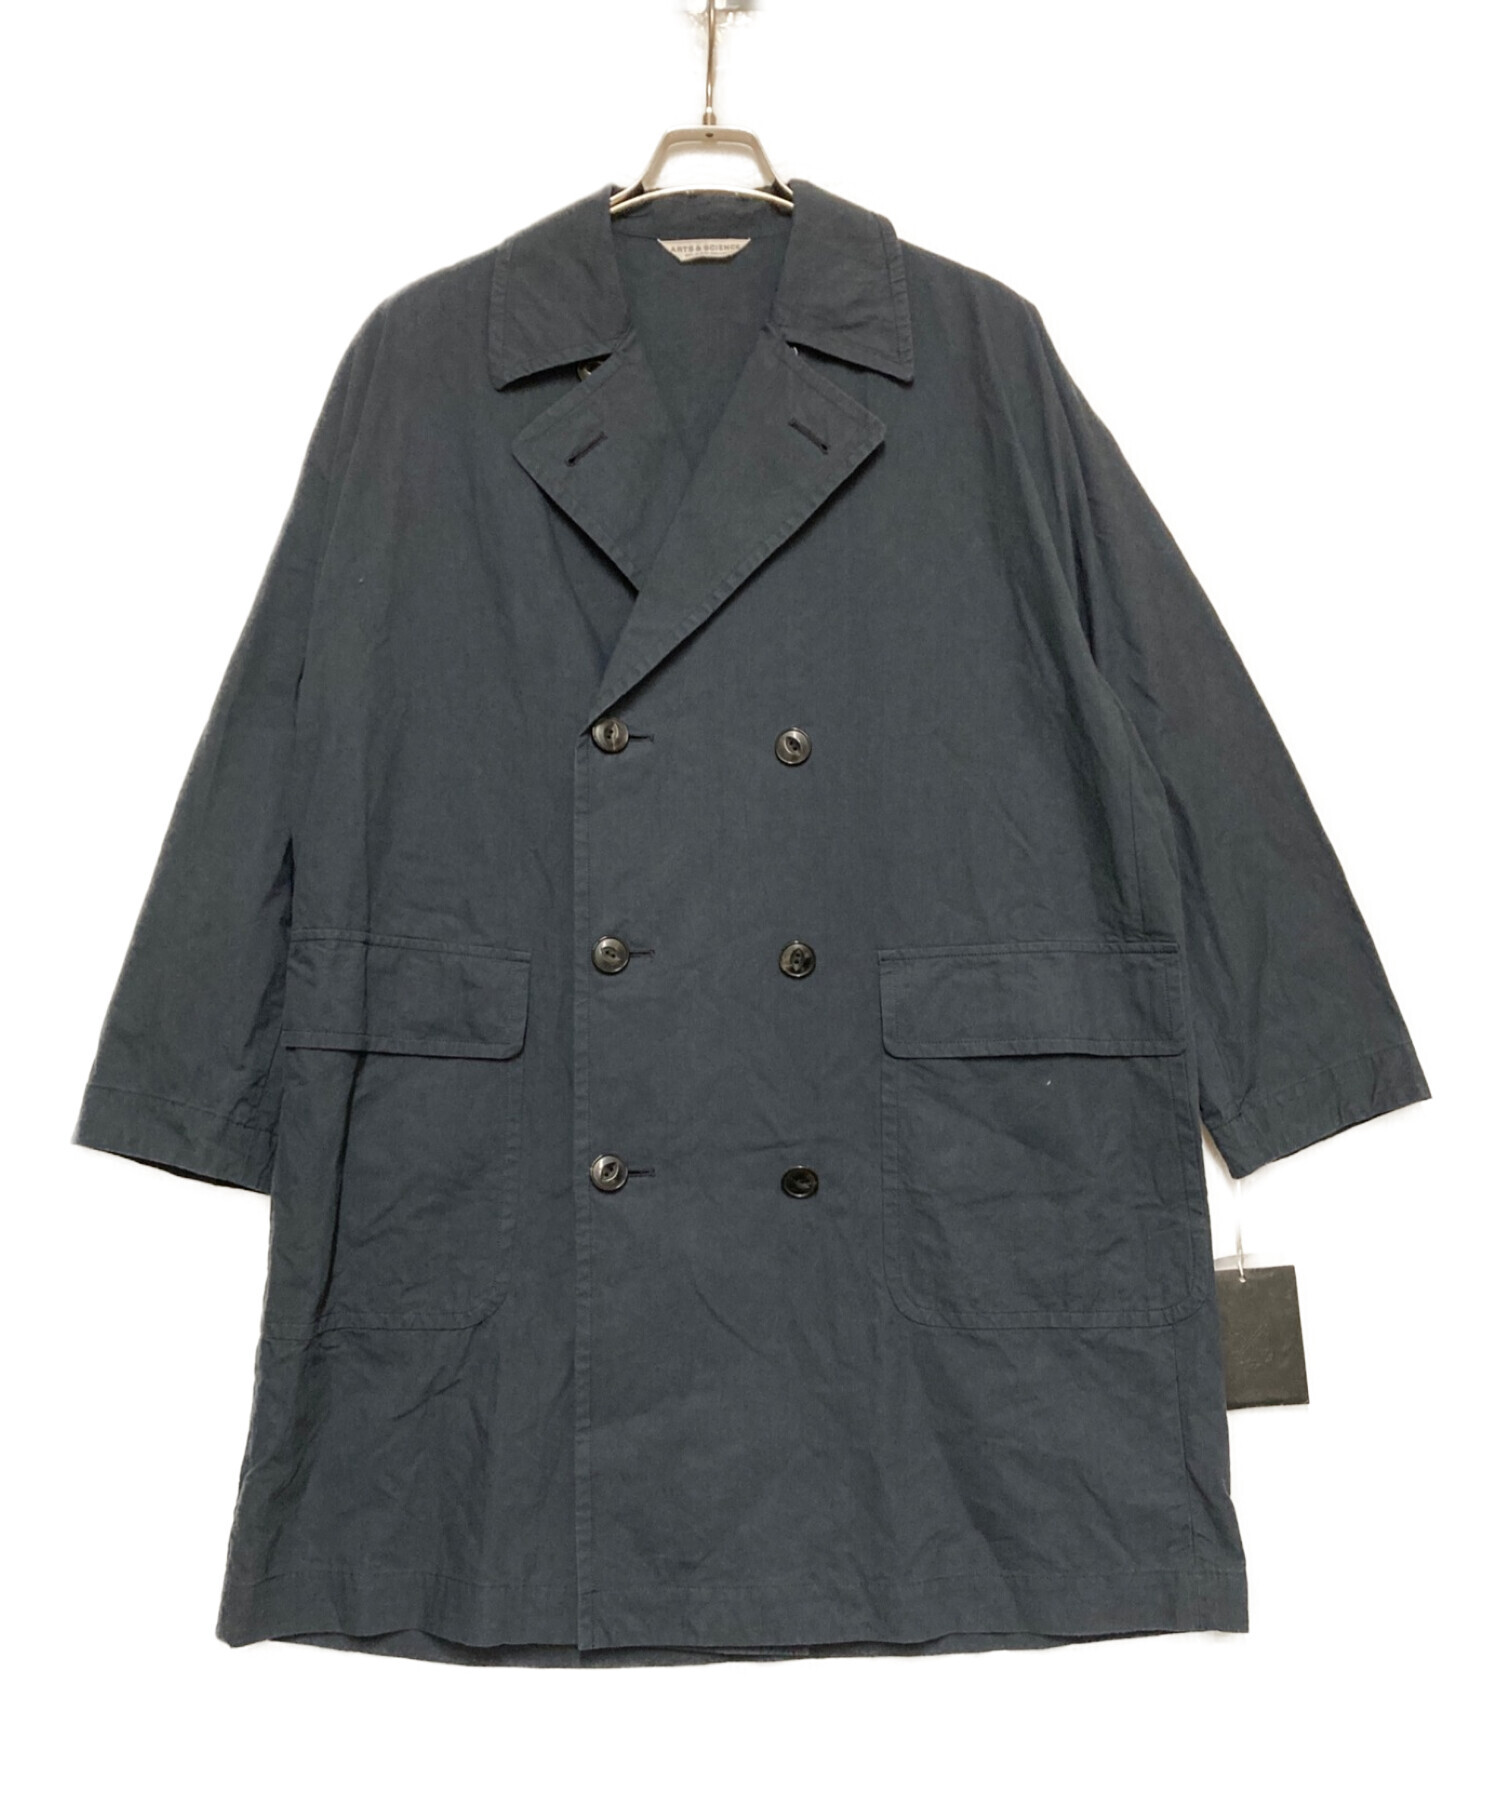 購入価格は104760円ですARTS\u0026SCIENCE Grandpa coat サイズ2 濃紺 ...